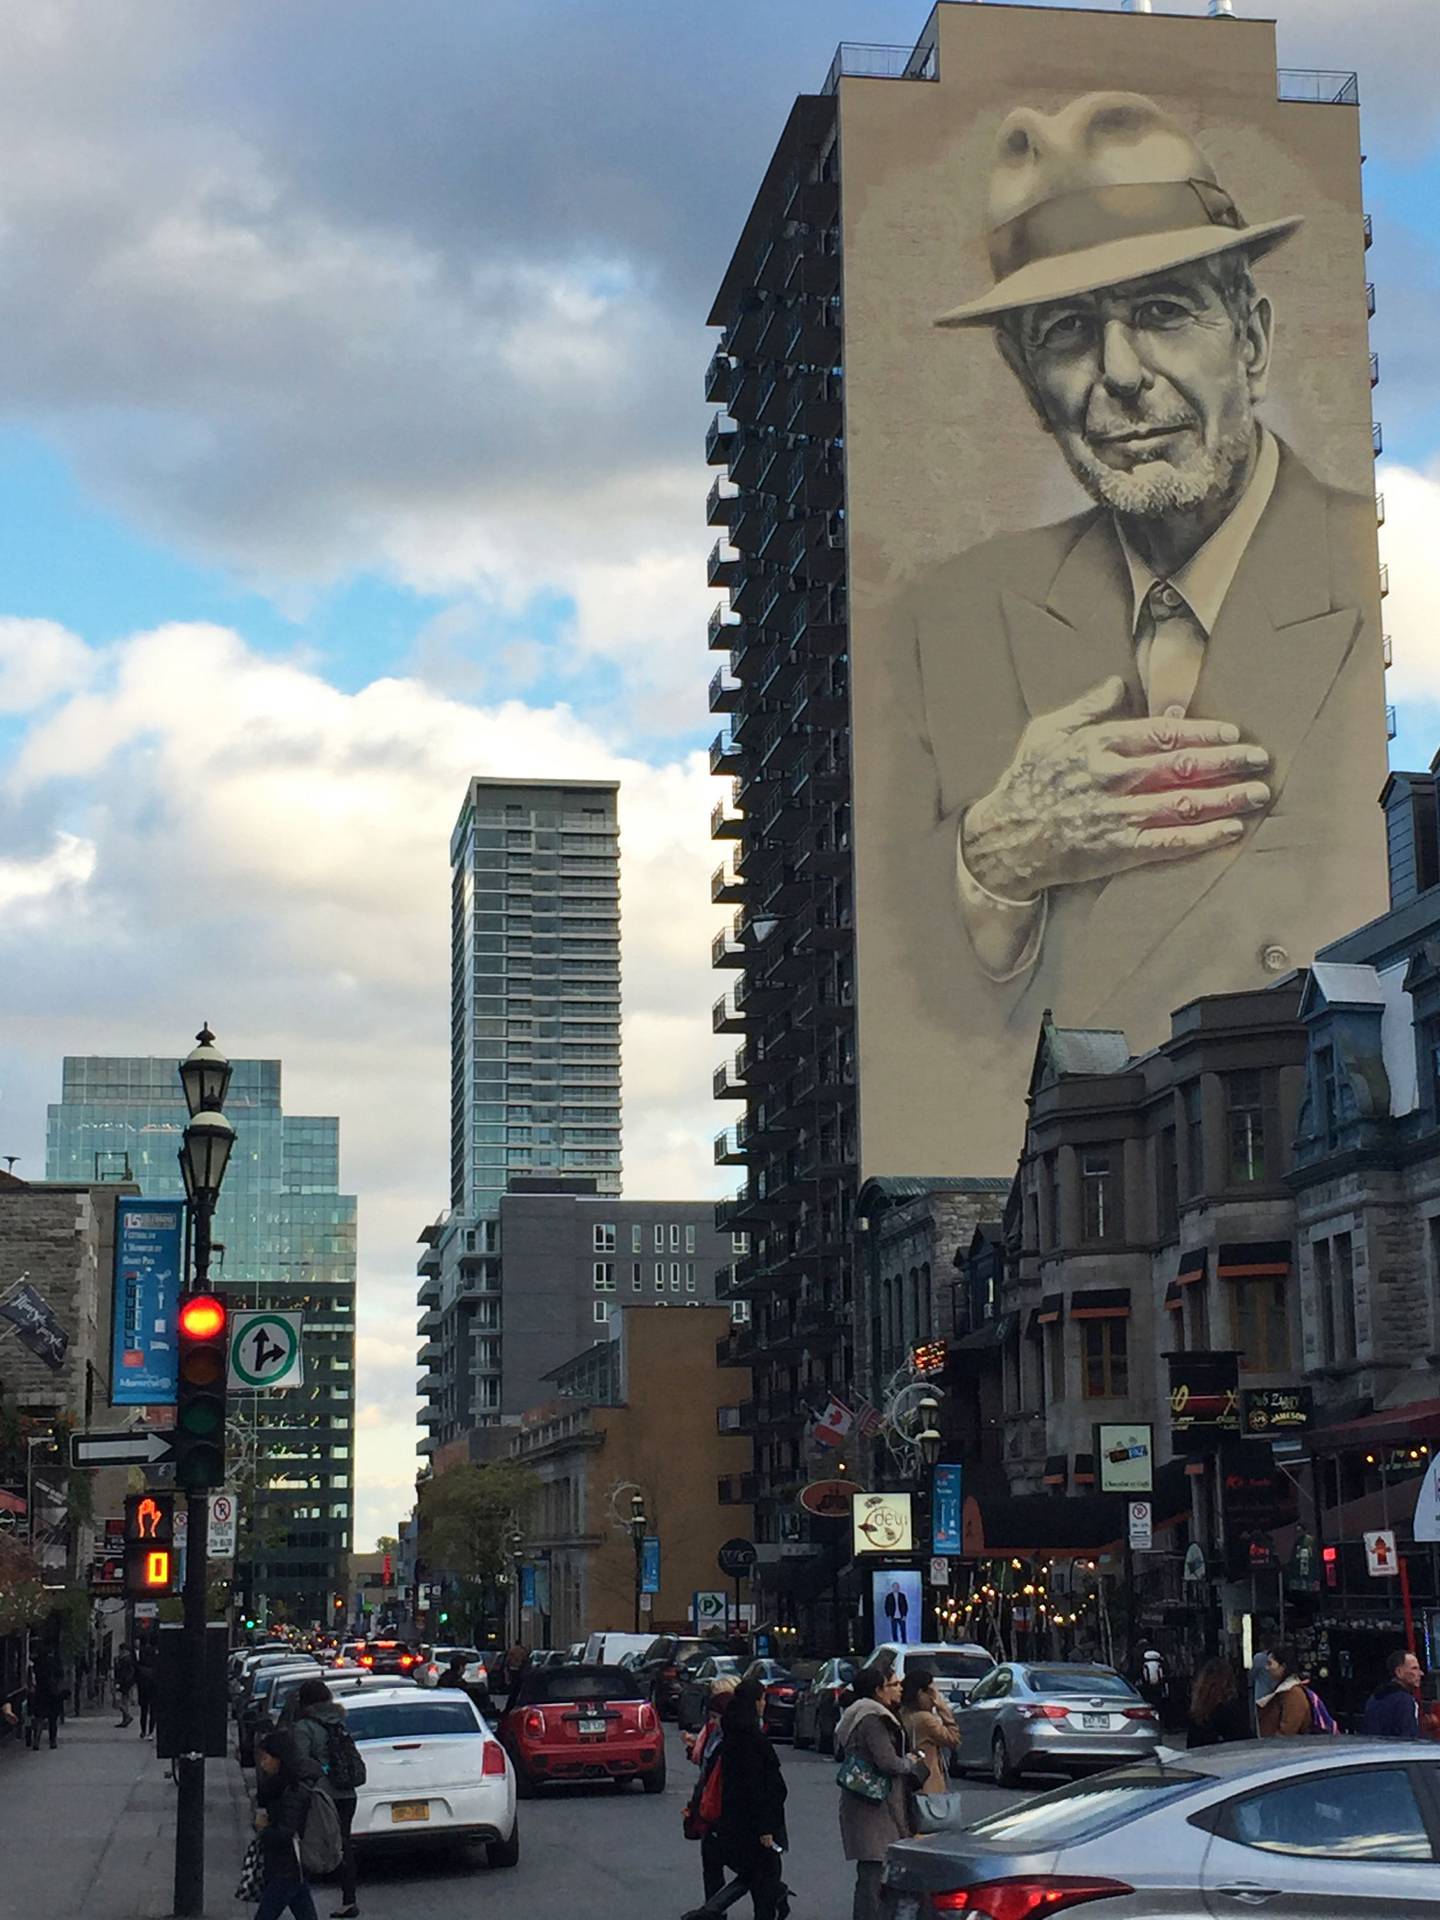 Leonard Cohen minnes fortsatt fire år etter siden død, her på en murvegg i Montreal i hjemlandet Canada.